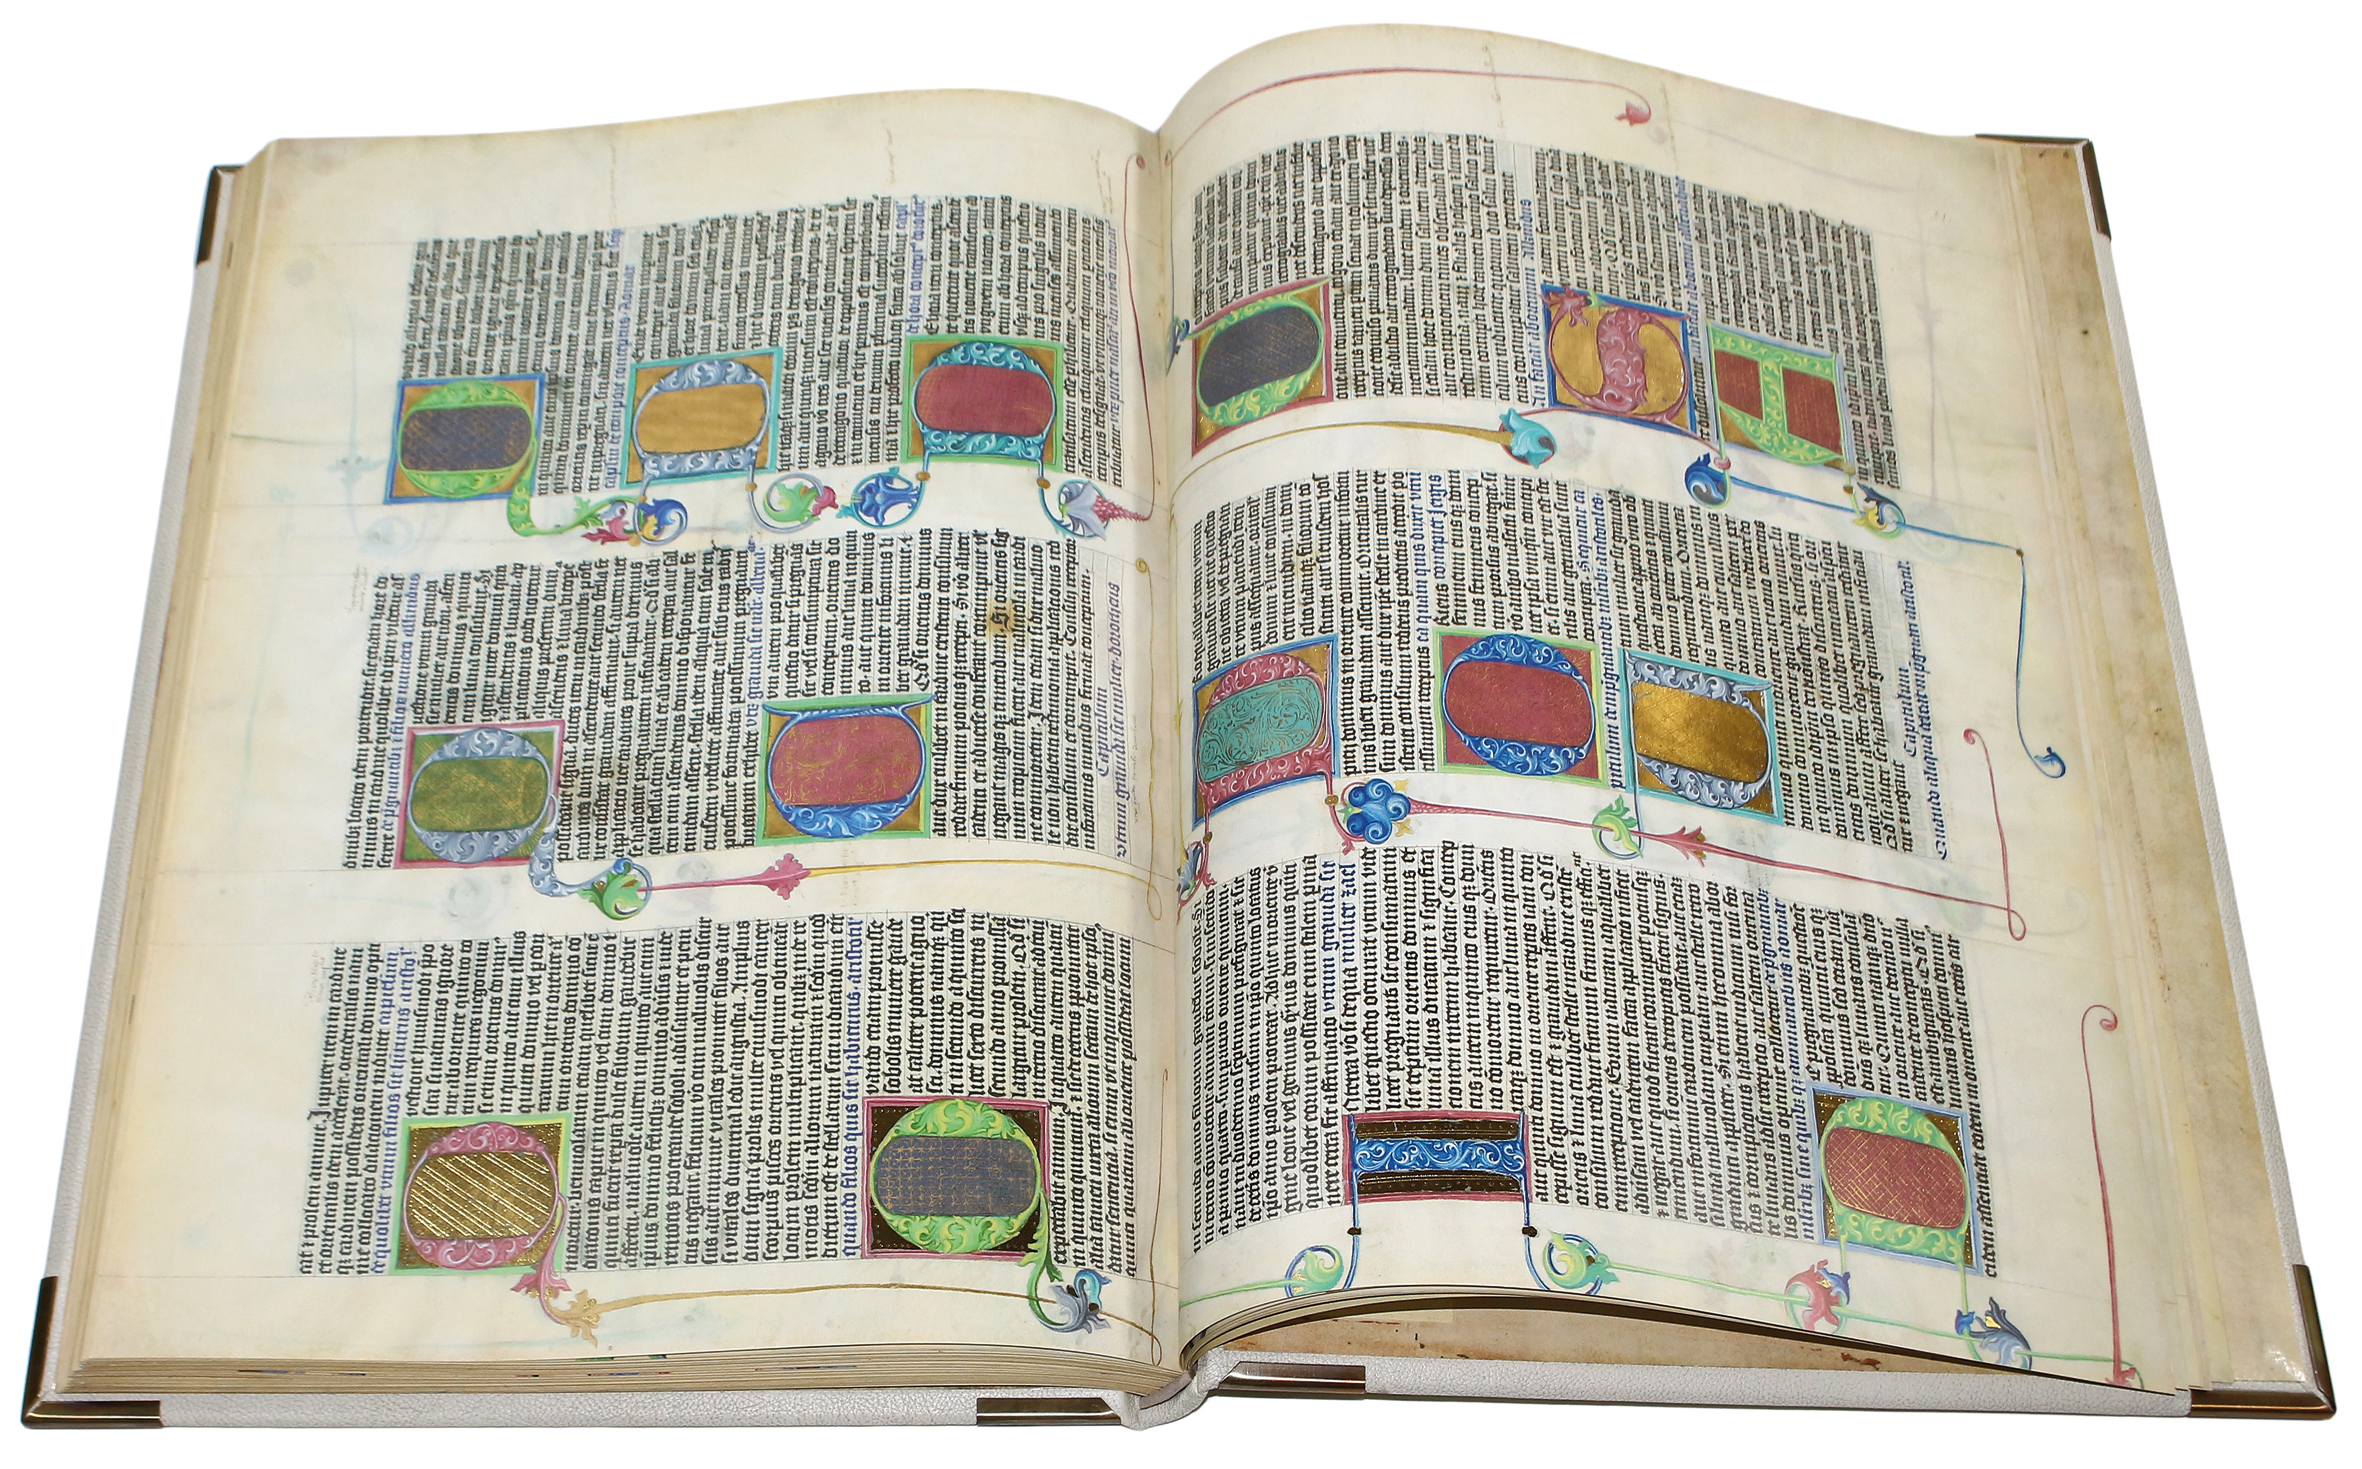 Astronomisch-astrologischer Codex König Wenzels IV. | Bild Nr.3